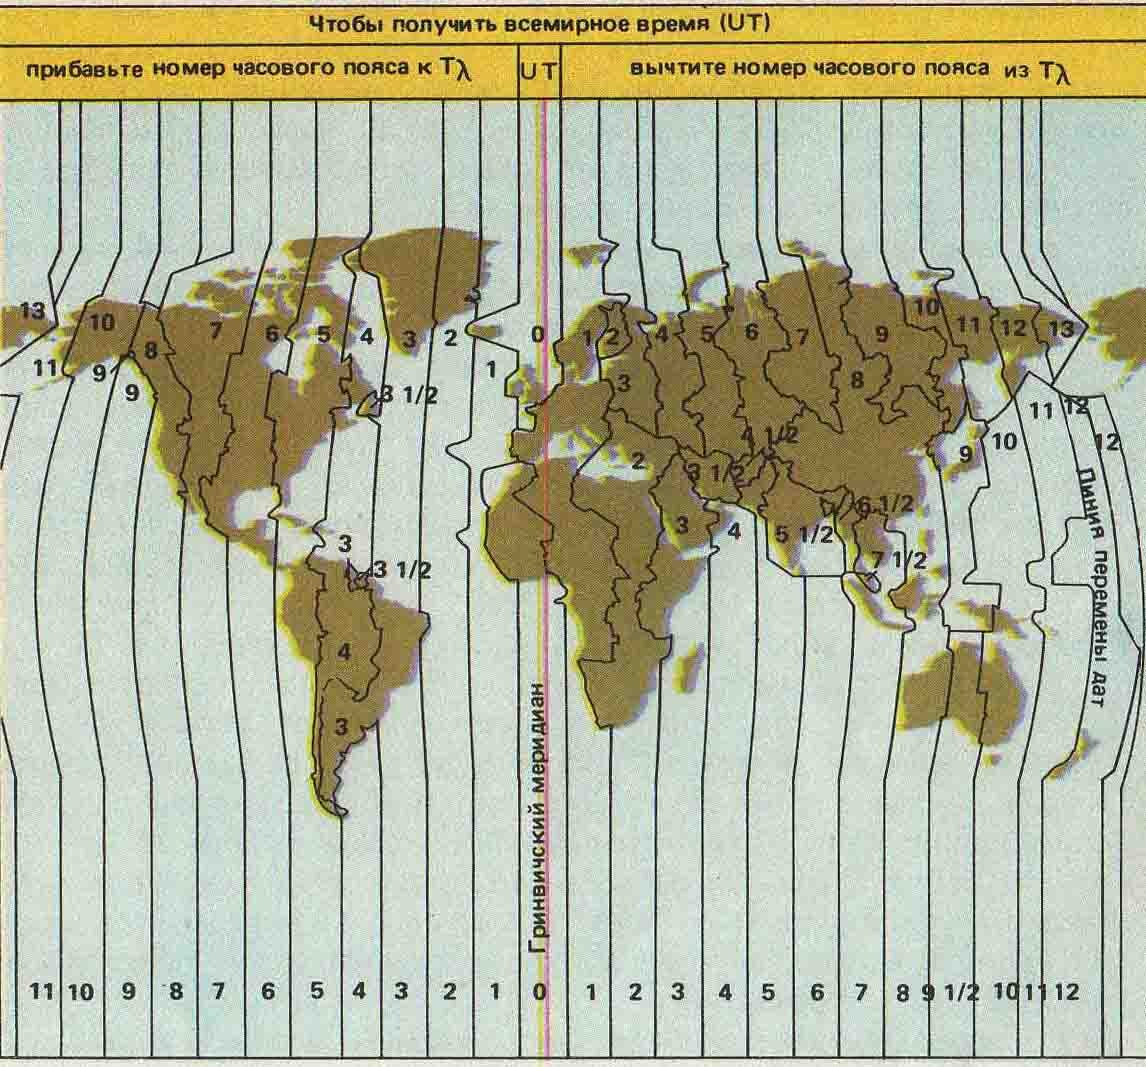 Где время по гринвичу. Карта часовых поясов. Мировые часовые пояса. Часовые пояса по Гринвичу. Карта поясного времени.